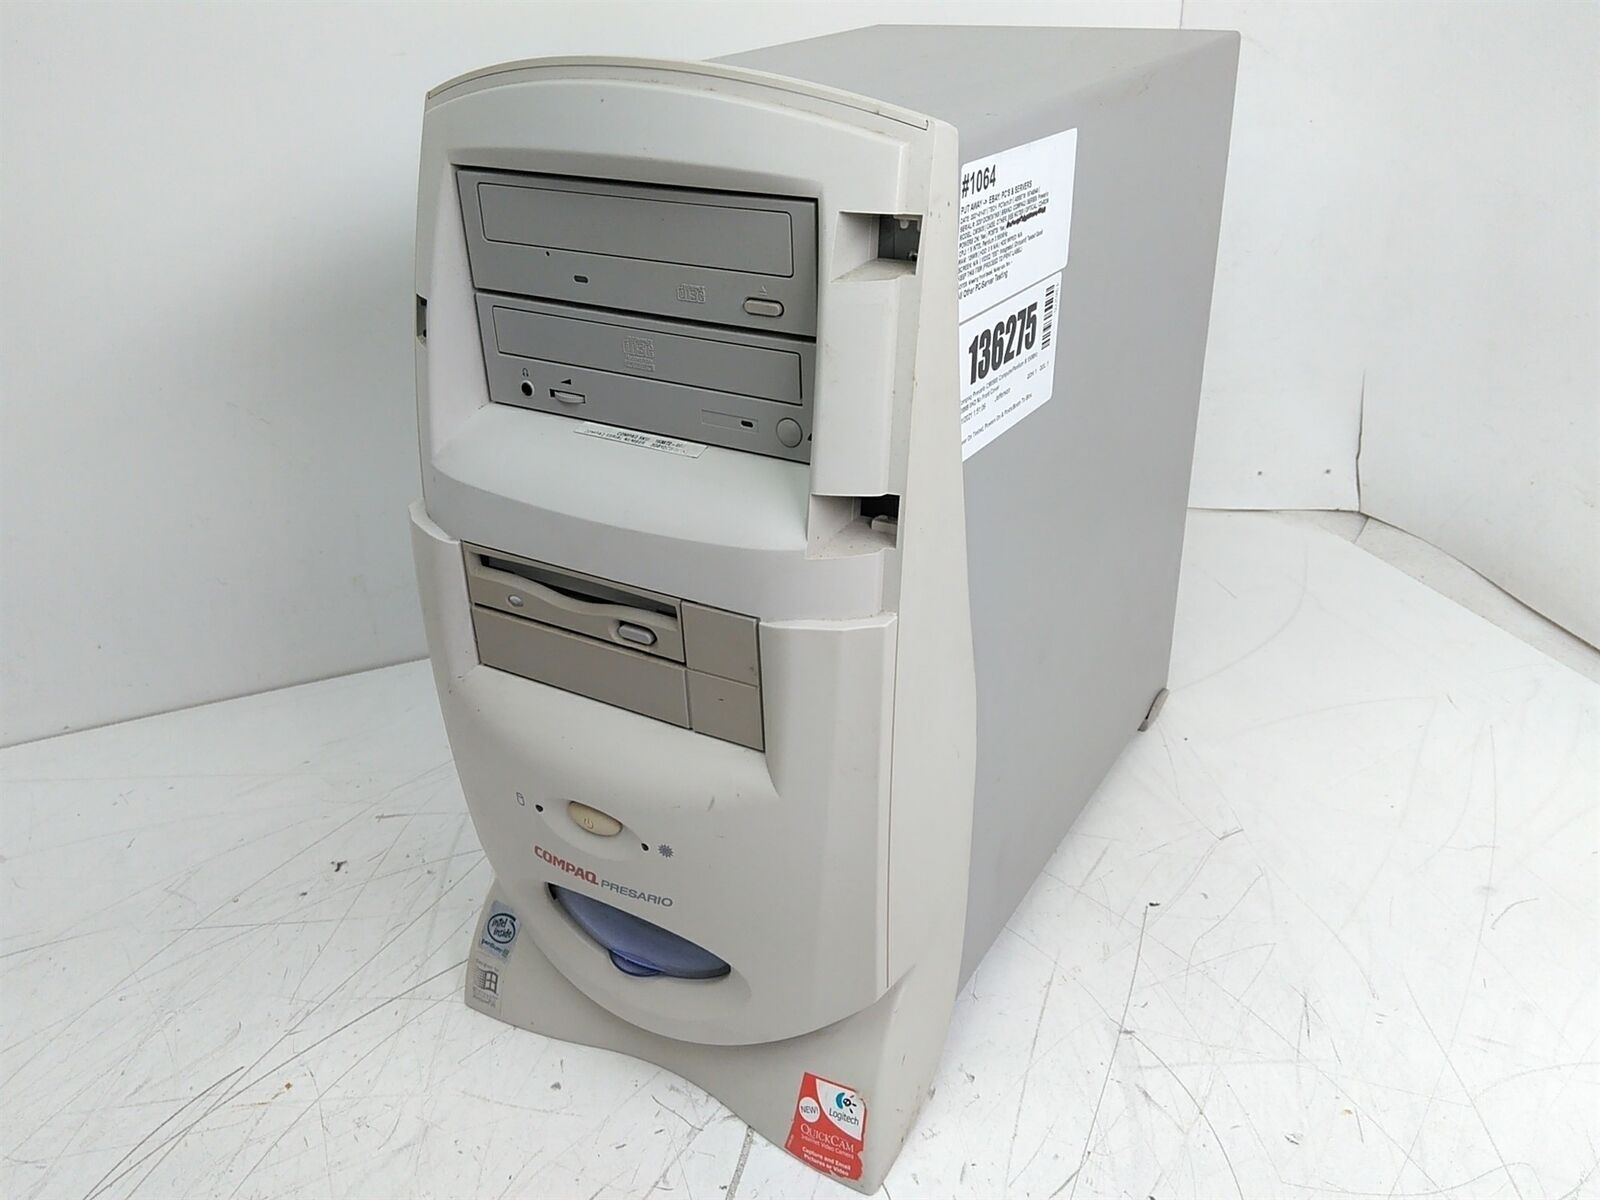 Compaq Presario CM0900 Retro Gaming Tower PC Pentium III 550MHz 128MB 0HD NO OS